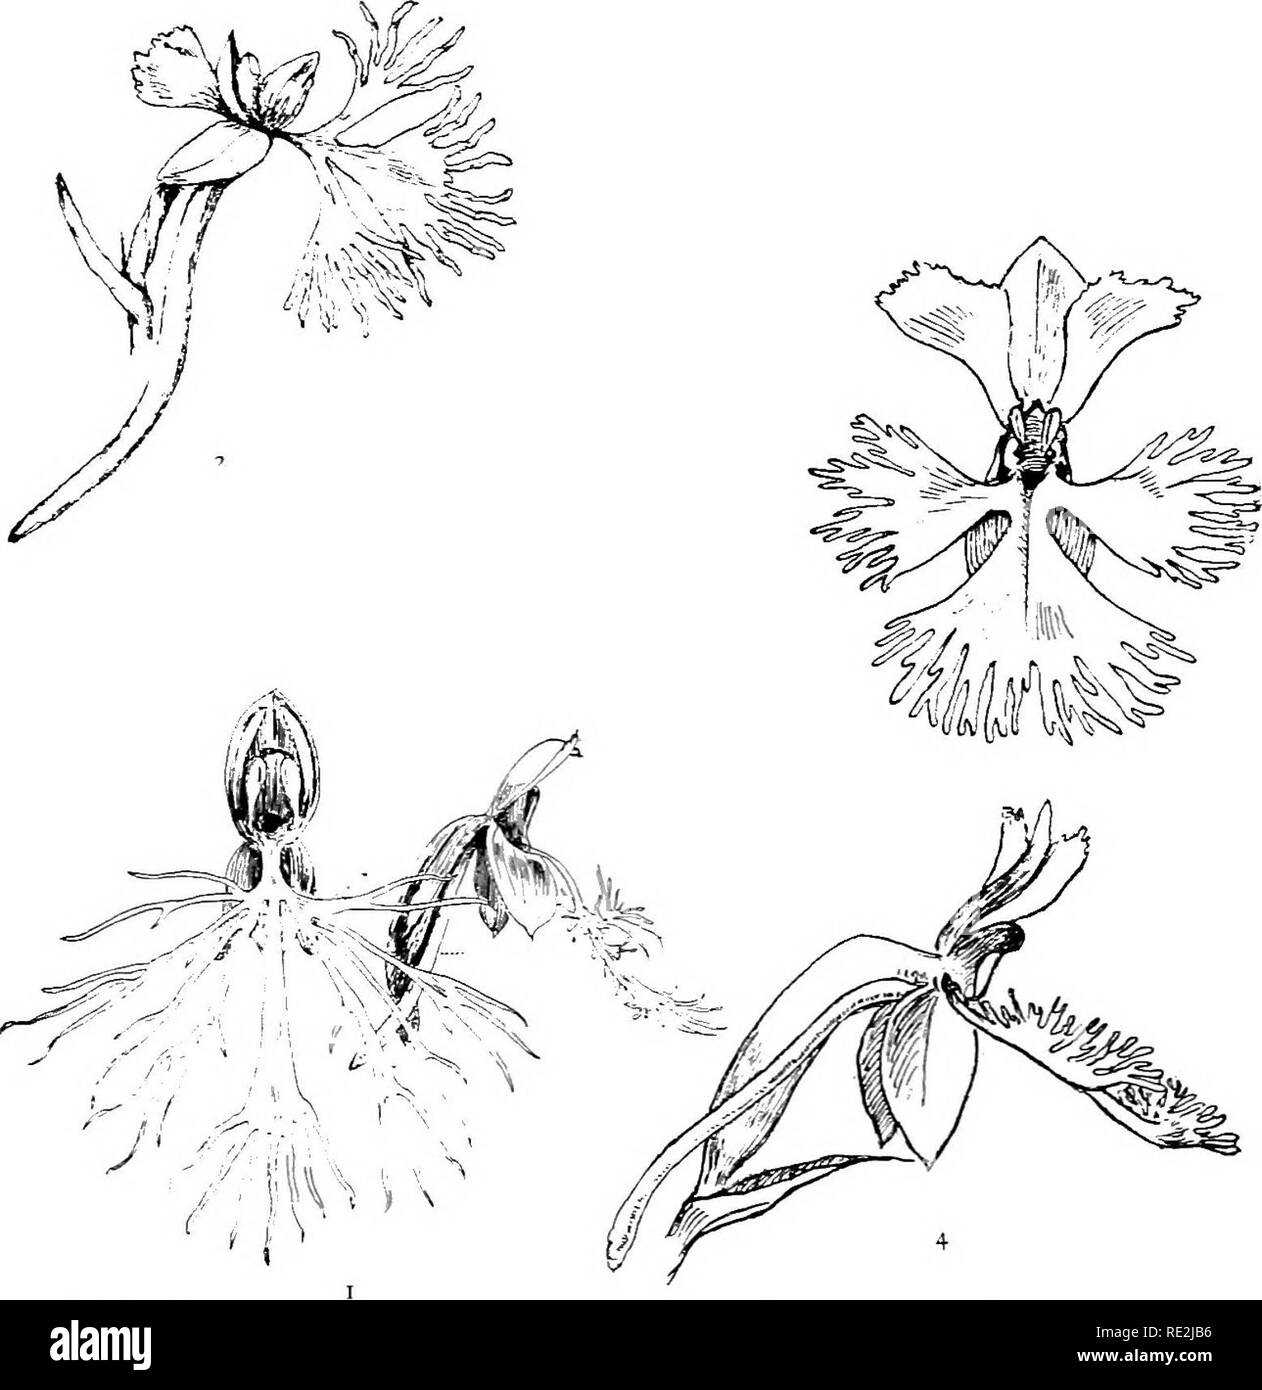 Nuestras orquídeas nativas; una serie de dibujos de la naturaleza de todas  las especies encontradas en el noreste de los Estados Unidos. Las orquídeas.  XX